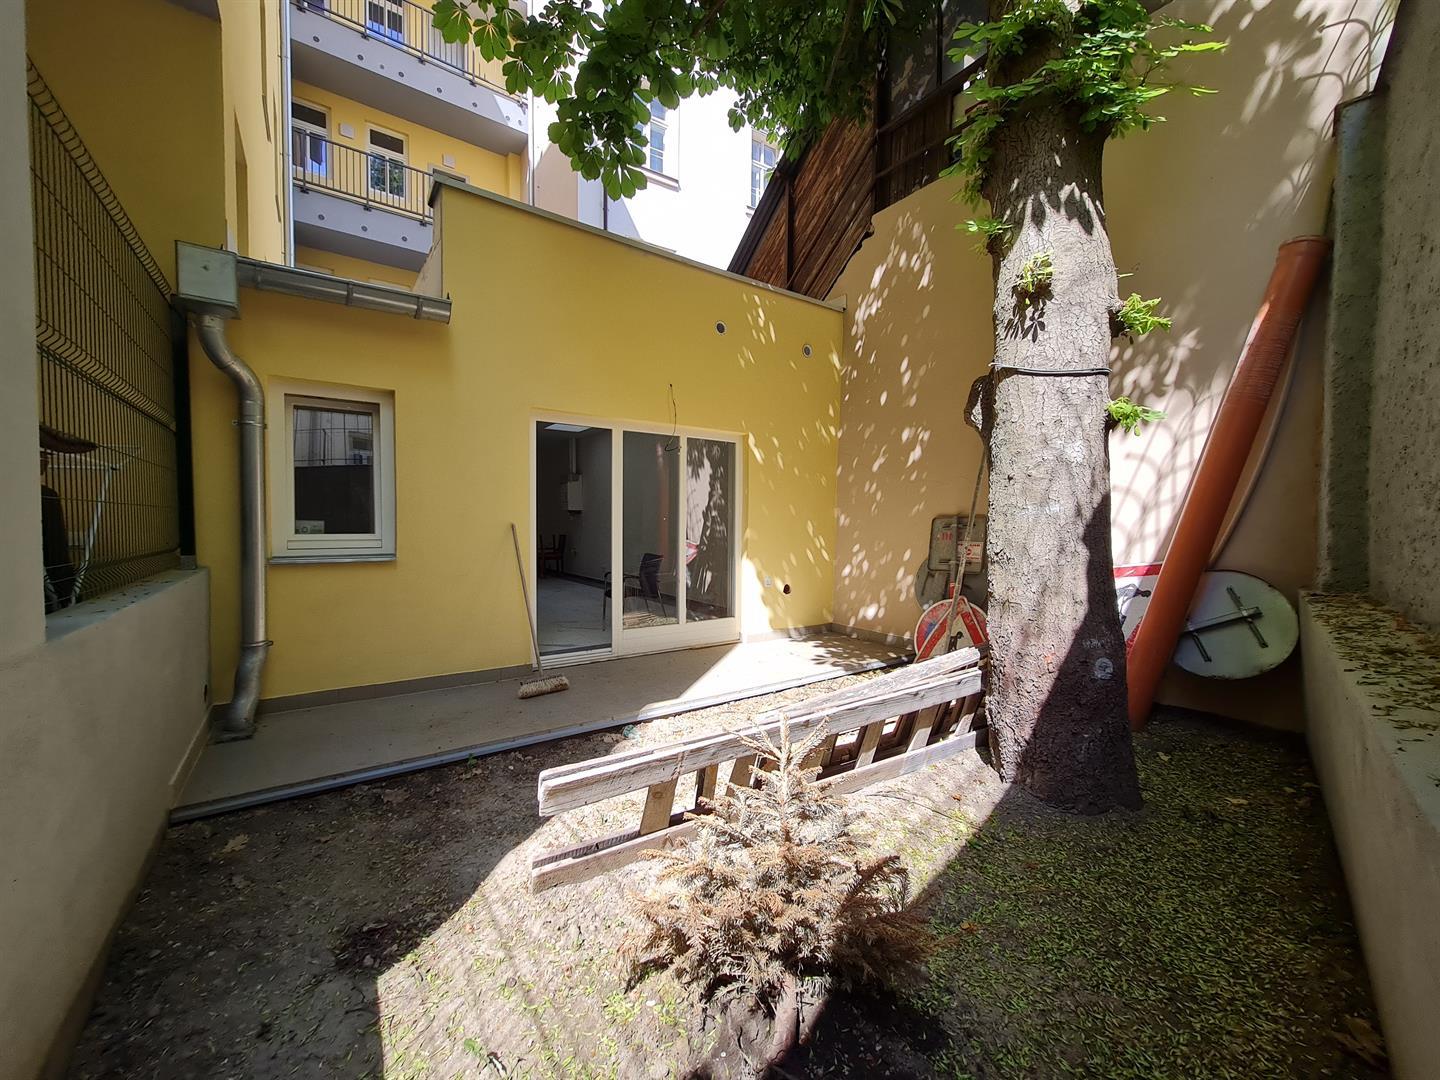 Vendita di spazio non residenziale 74 m2 al piano terra con accesso al giardino a Praga 5